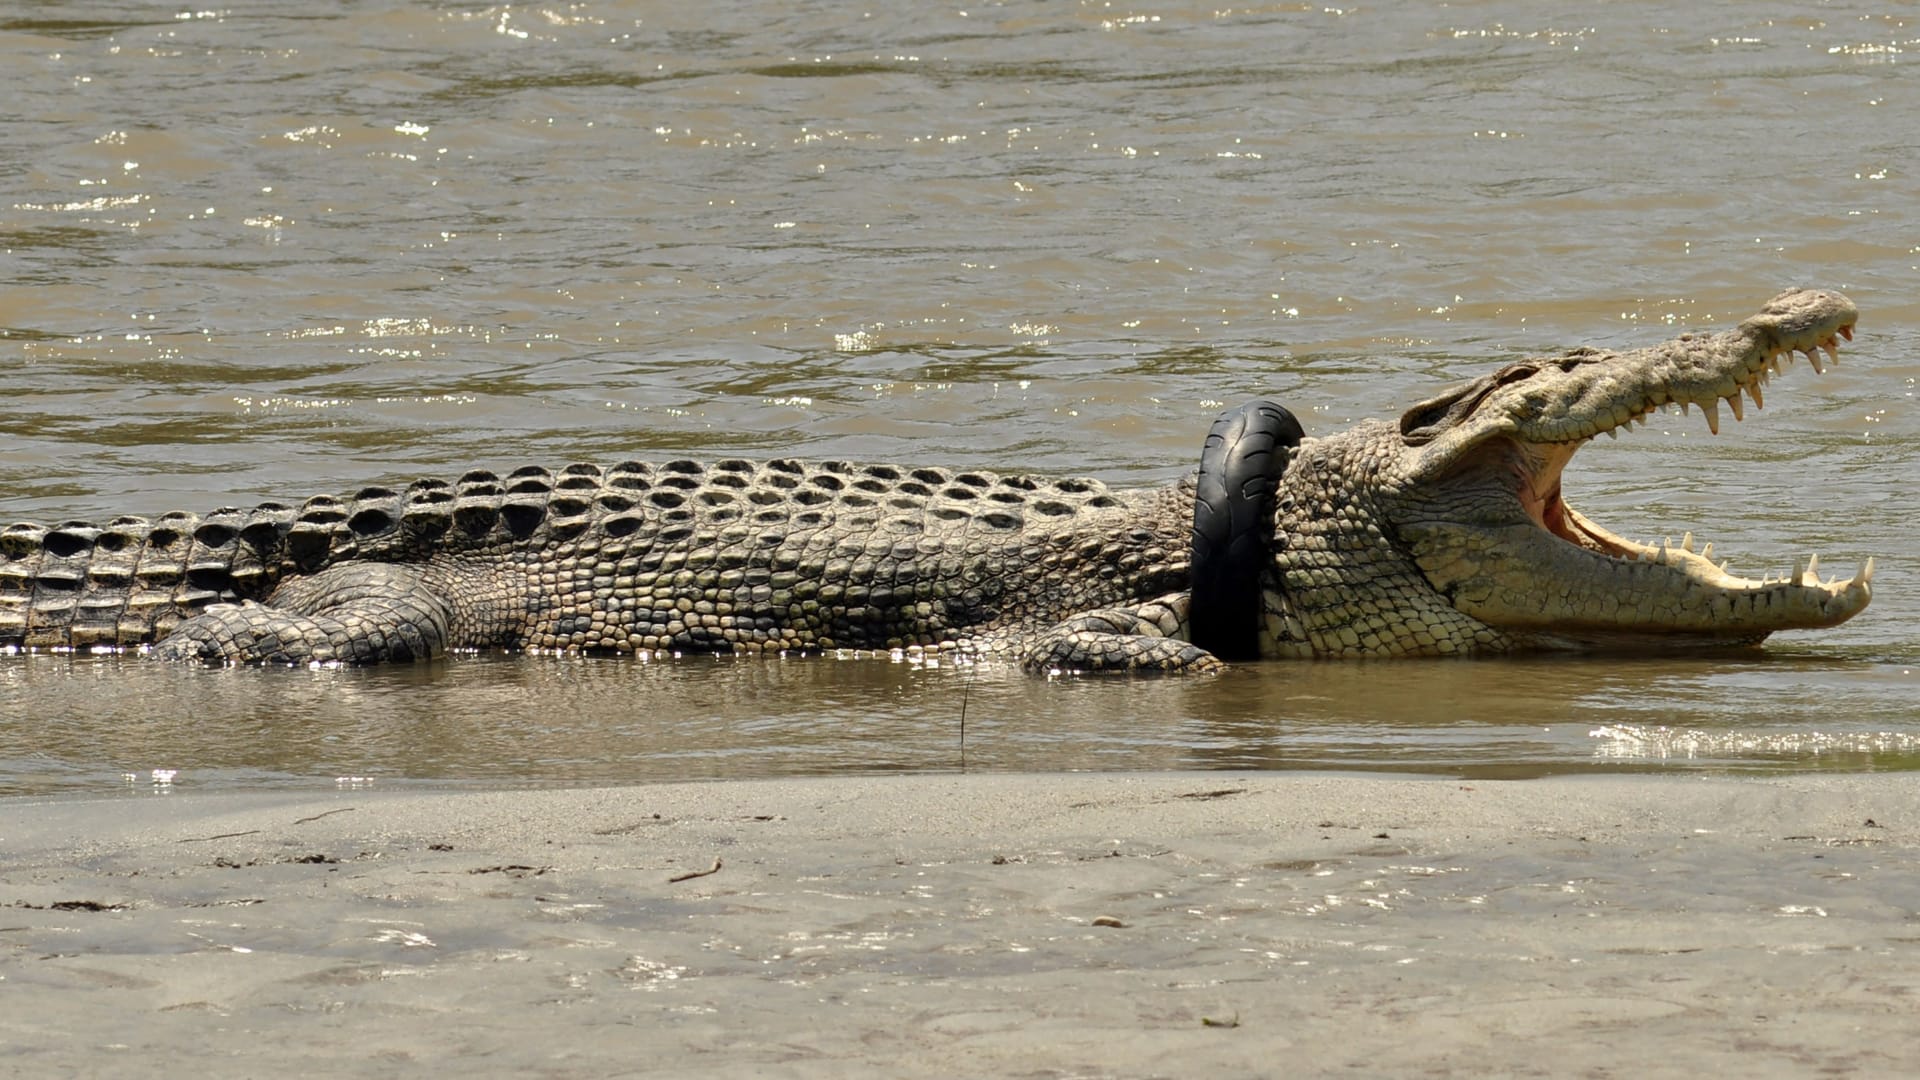 فيديو مرعب لتمساح ضخم يسبح بجانب فتيات في بحيرة.. شاهد رد فعلهن